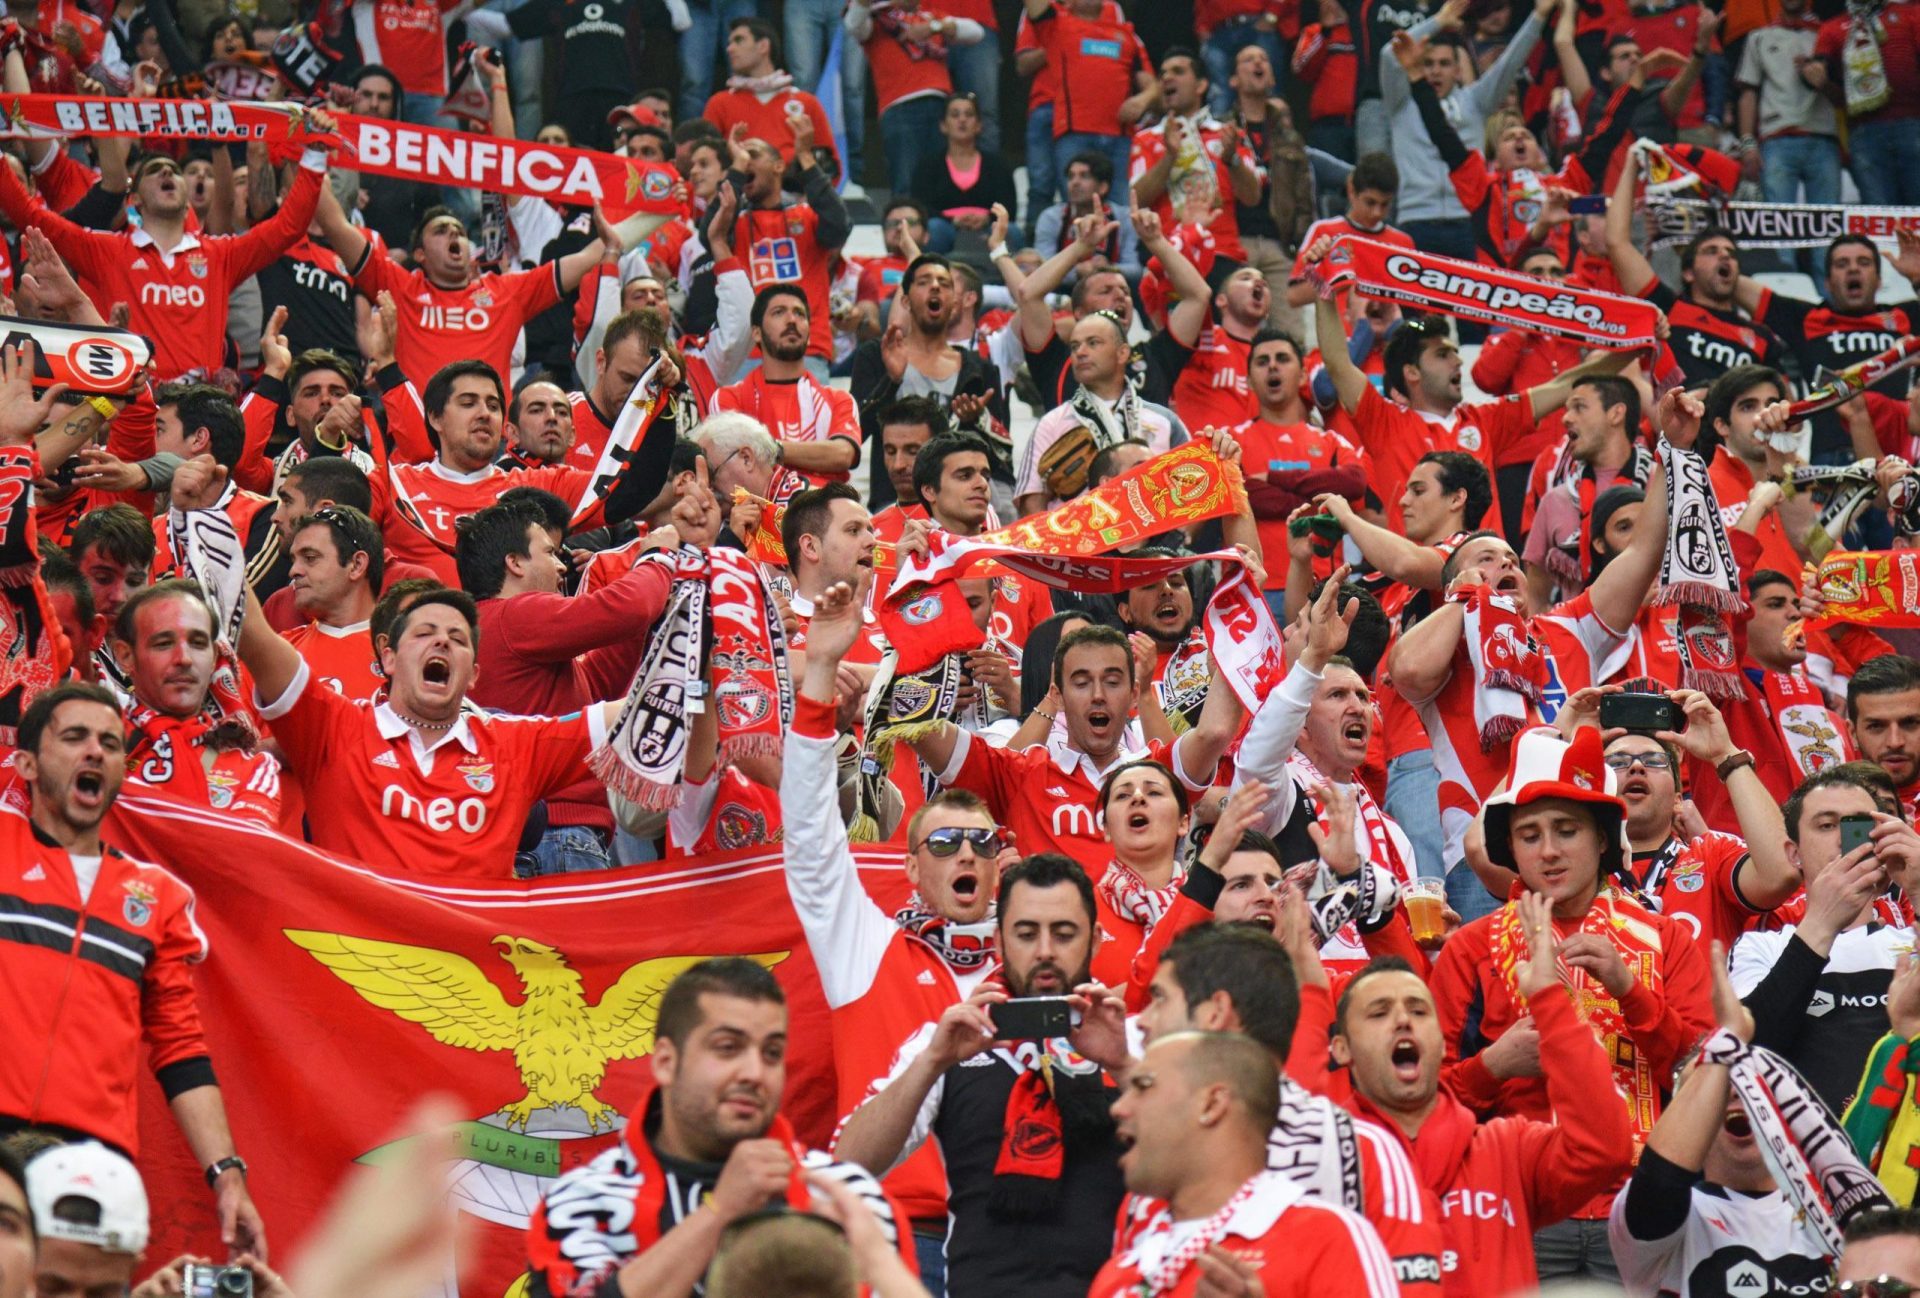 Os resultados das contas do Benfica